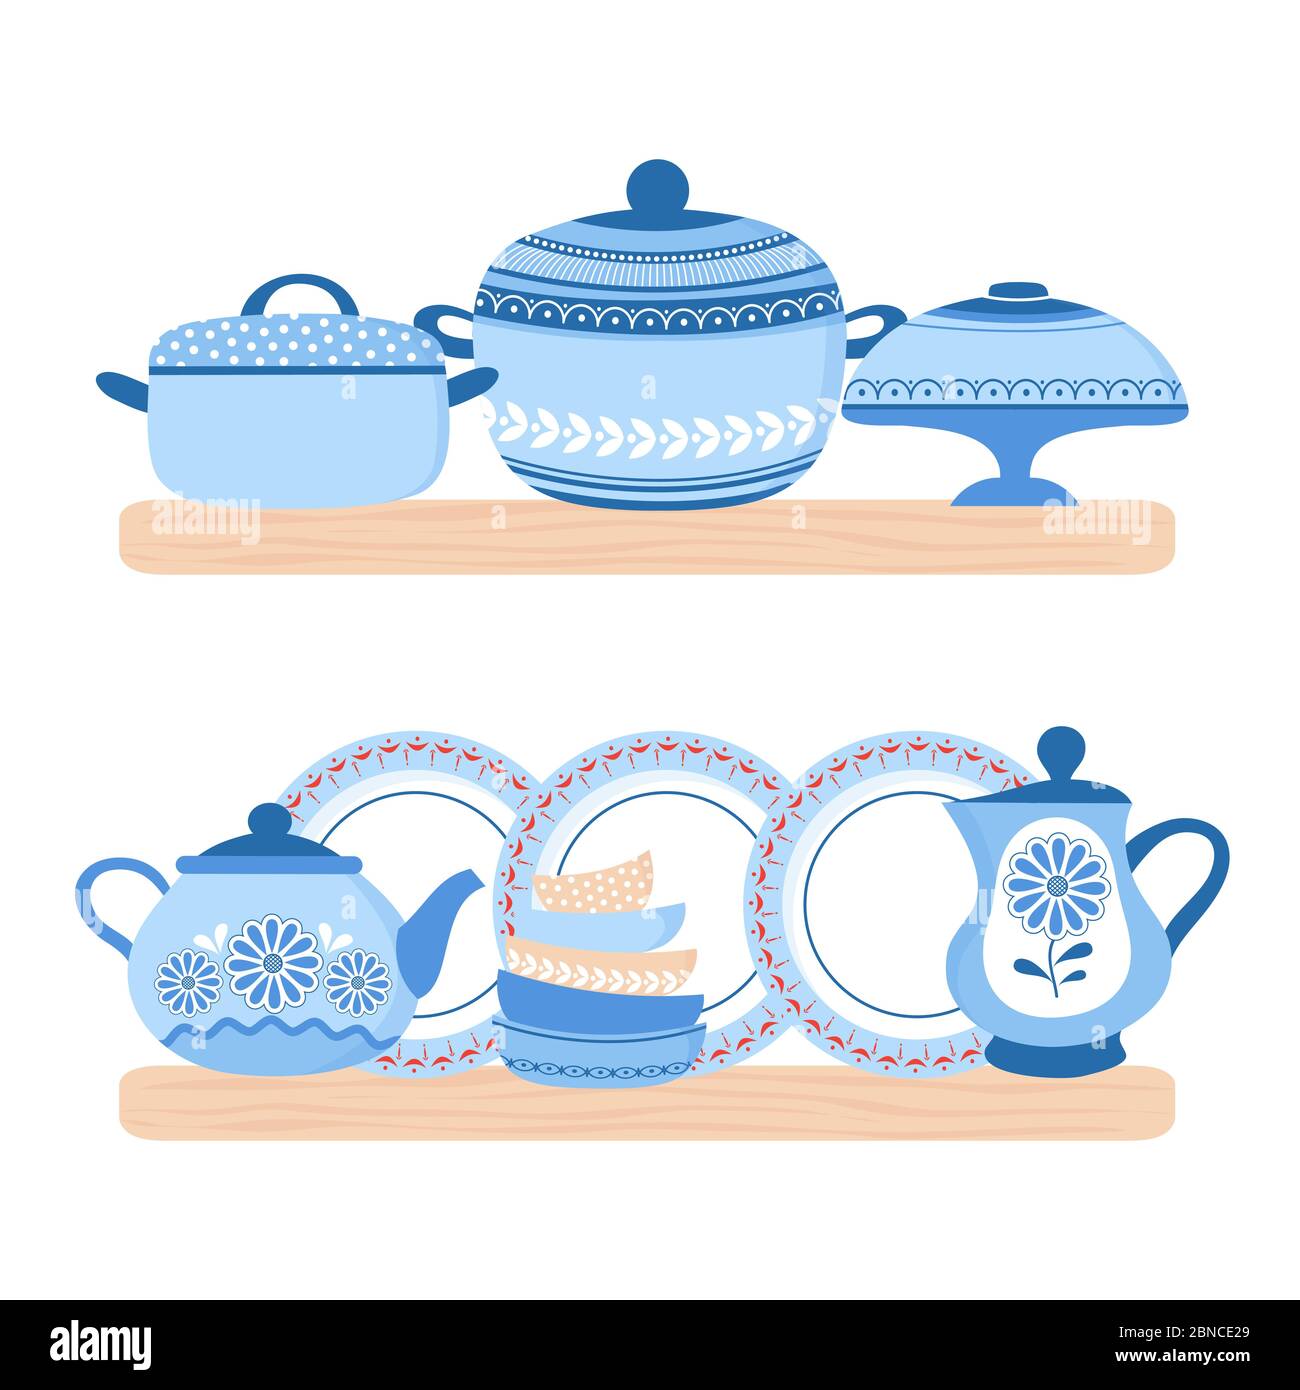 Vaisselle céramique batterie de cuisine. Bols en porcelaine bleue, assiettes, théière et pane sur les étagères en bois. Illustration de la vaisselle Vector en céramique, de l'ustensile de cuisine et de la vaisselle Illustration de Vecteur